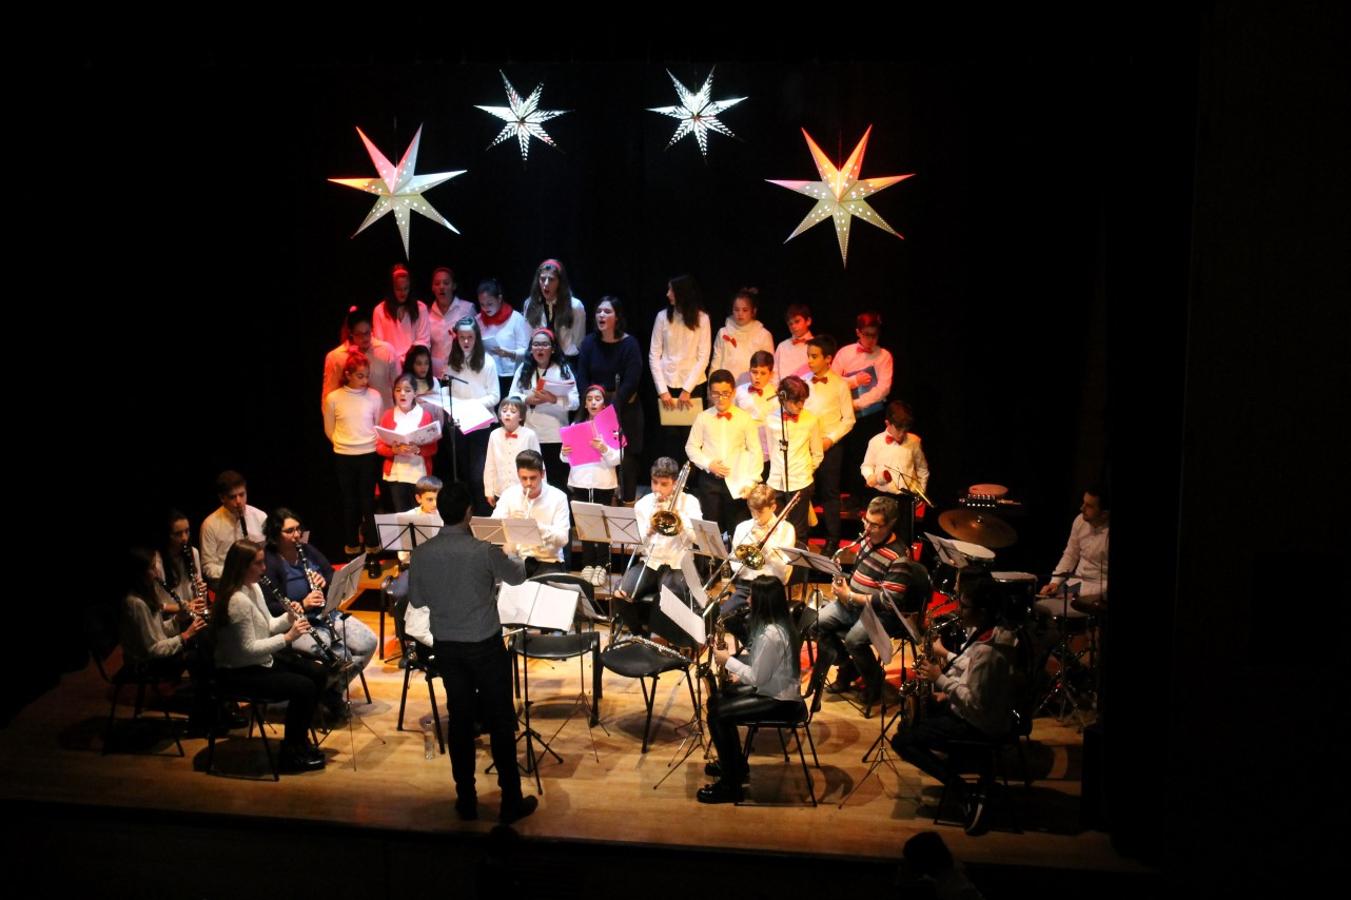 Concierto de Navidad de la Escuela Municipal de Música